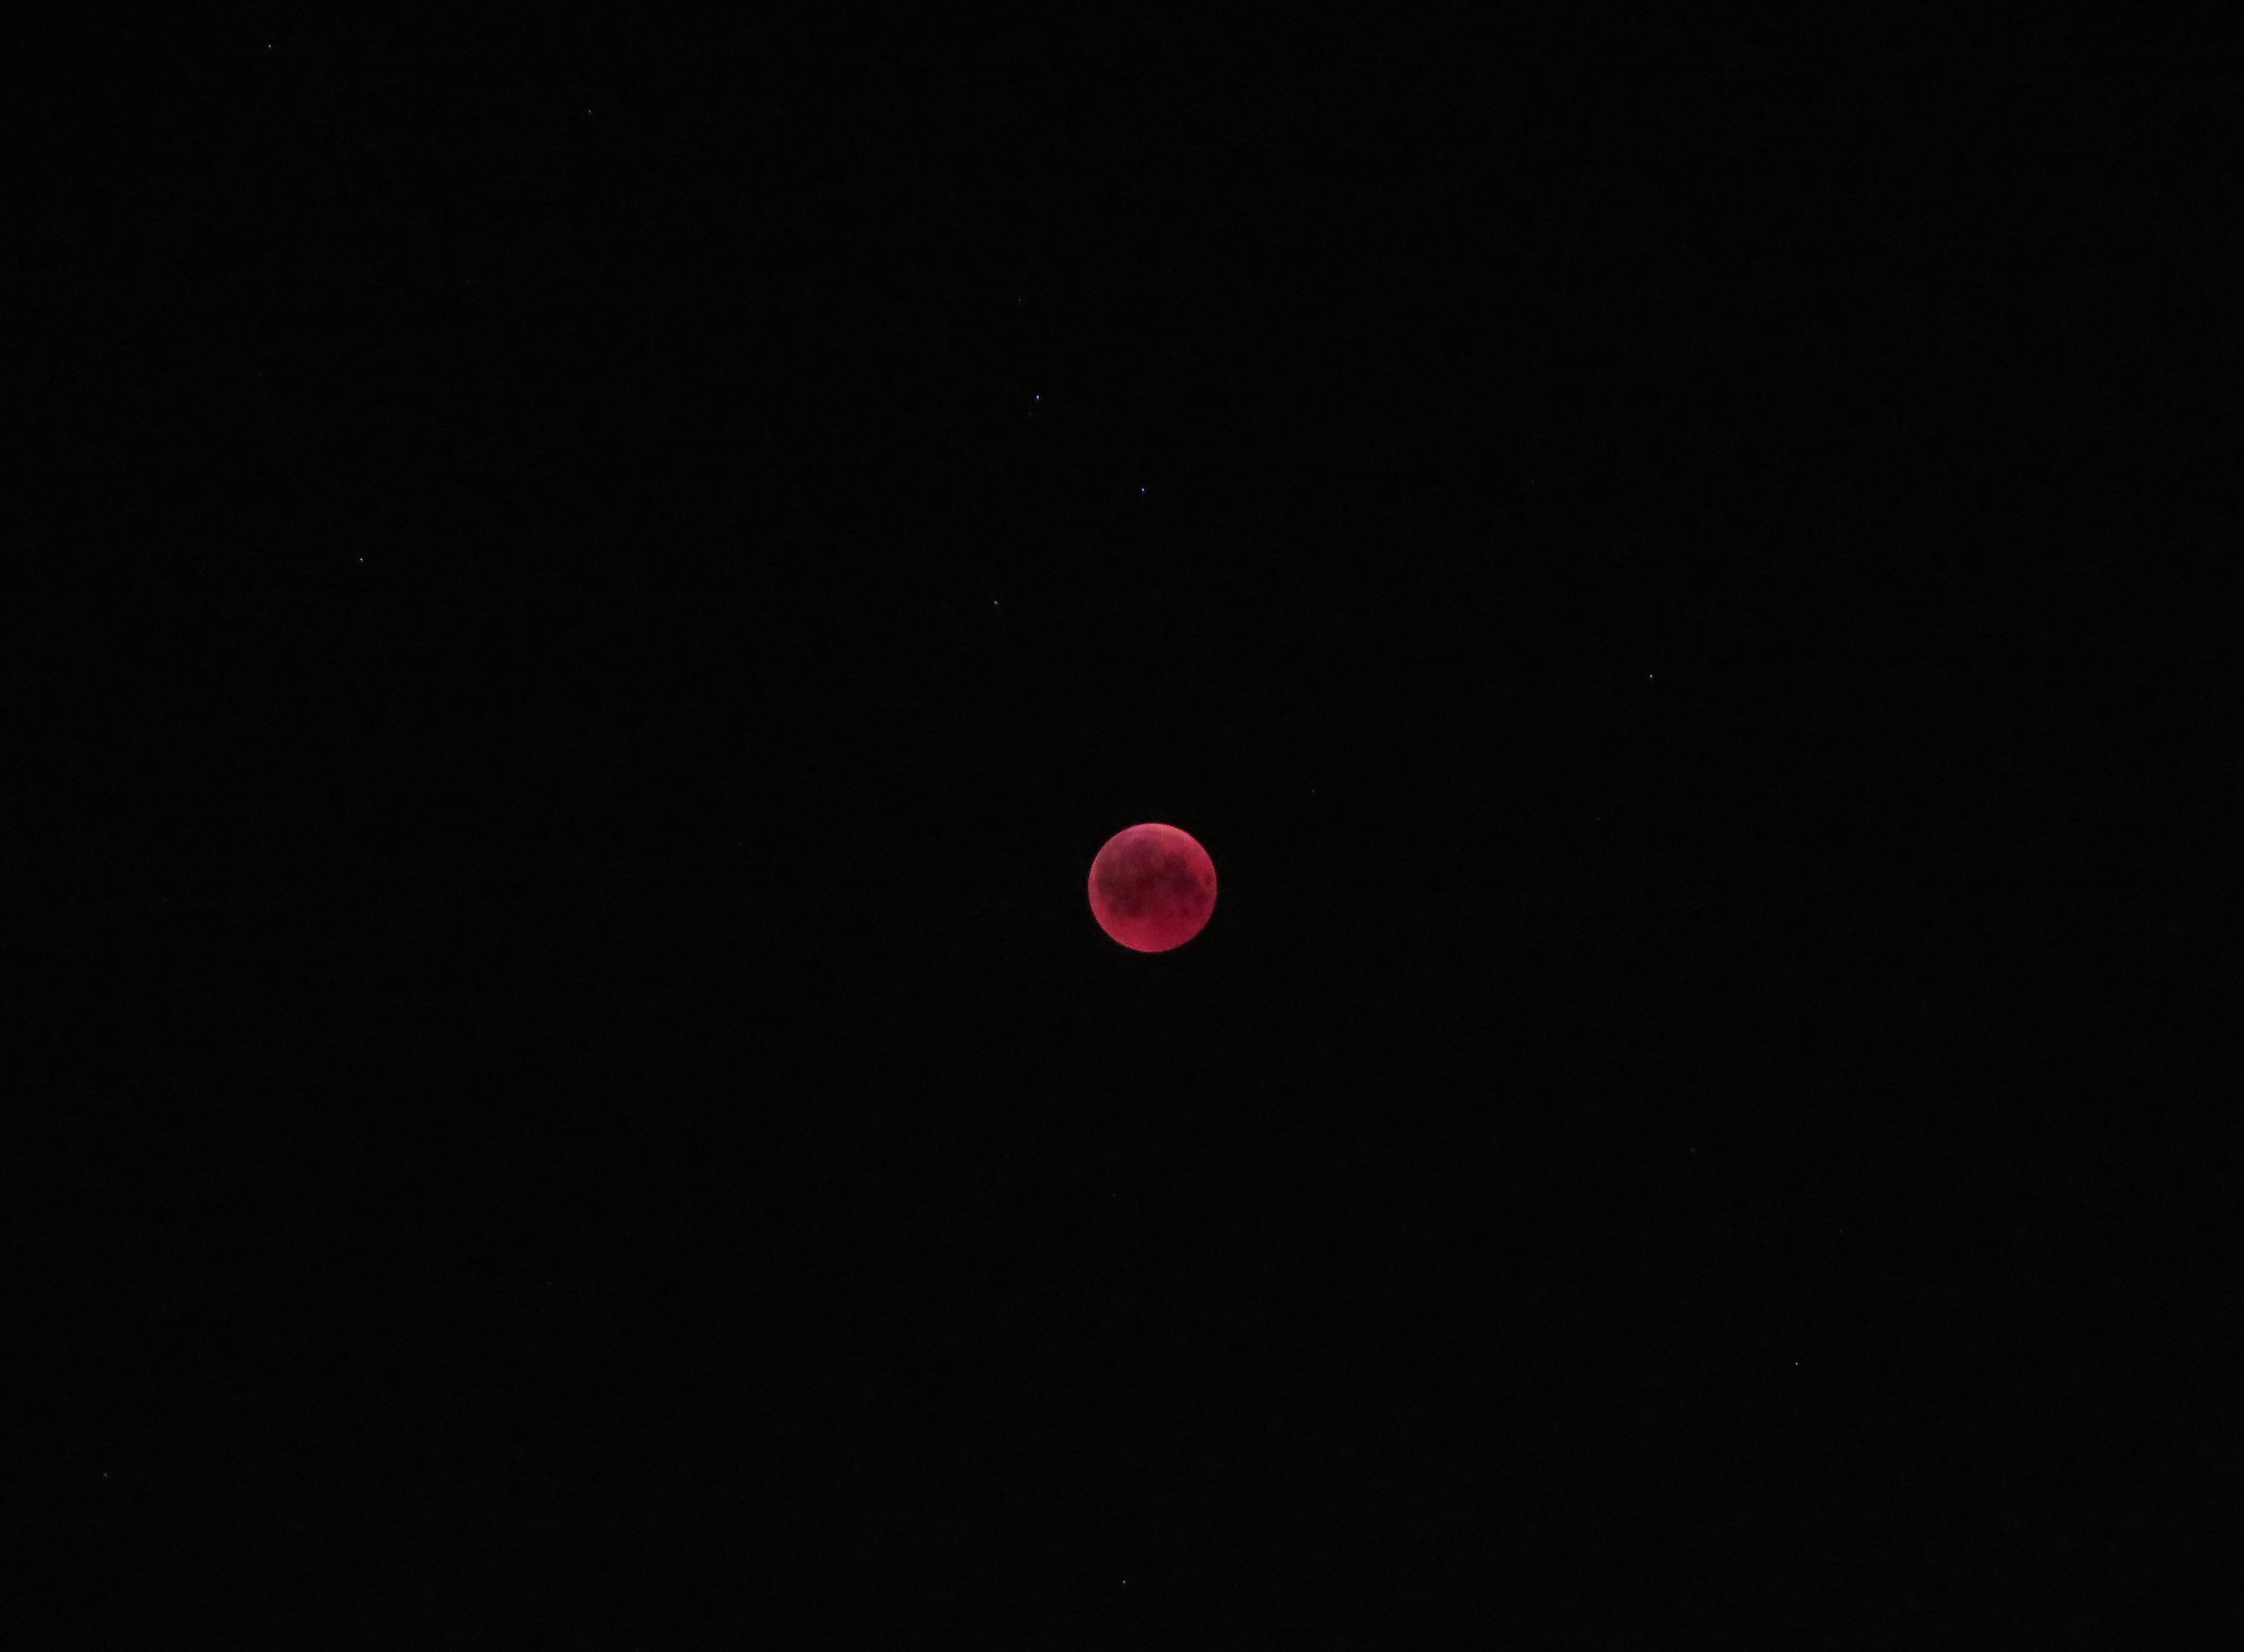 ماه سرخ در میان صورت فلکی جدی